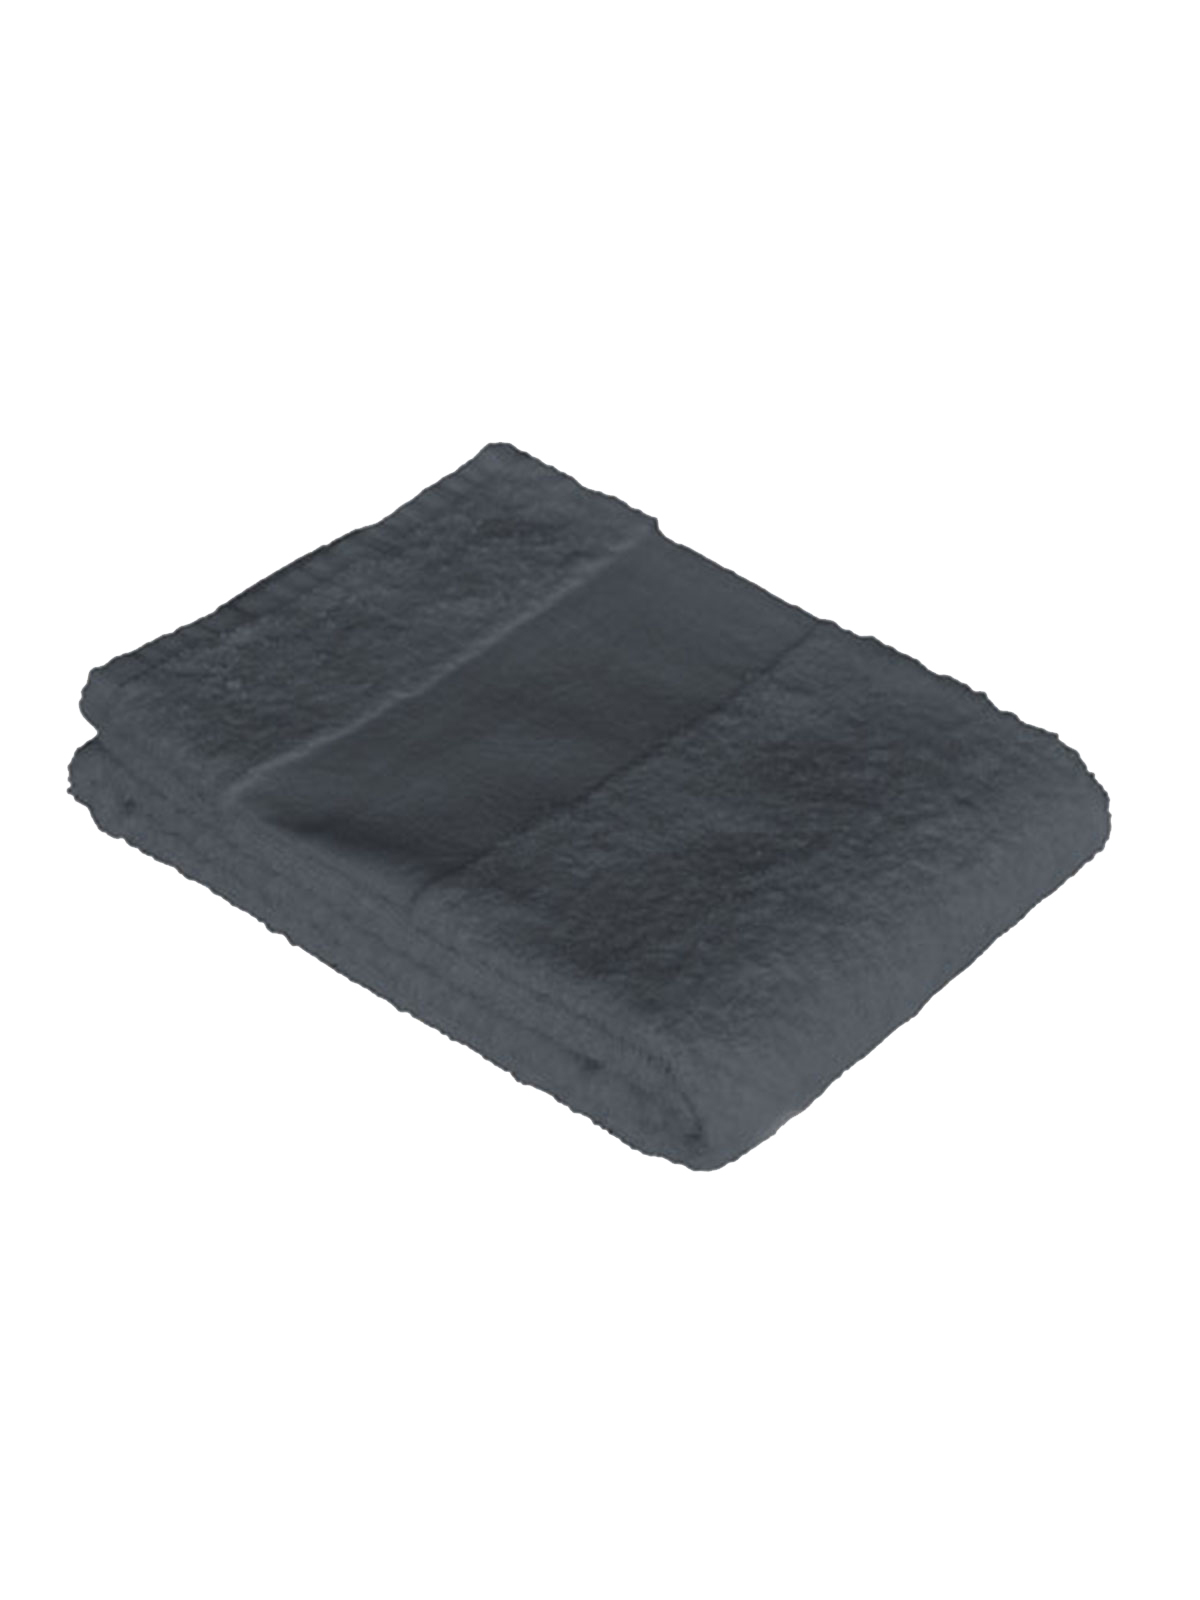 economy-towel-70x140-anthracite-grey.webp